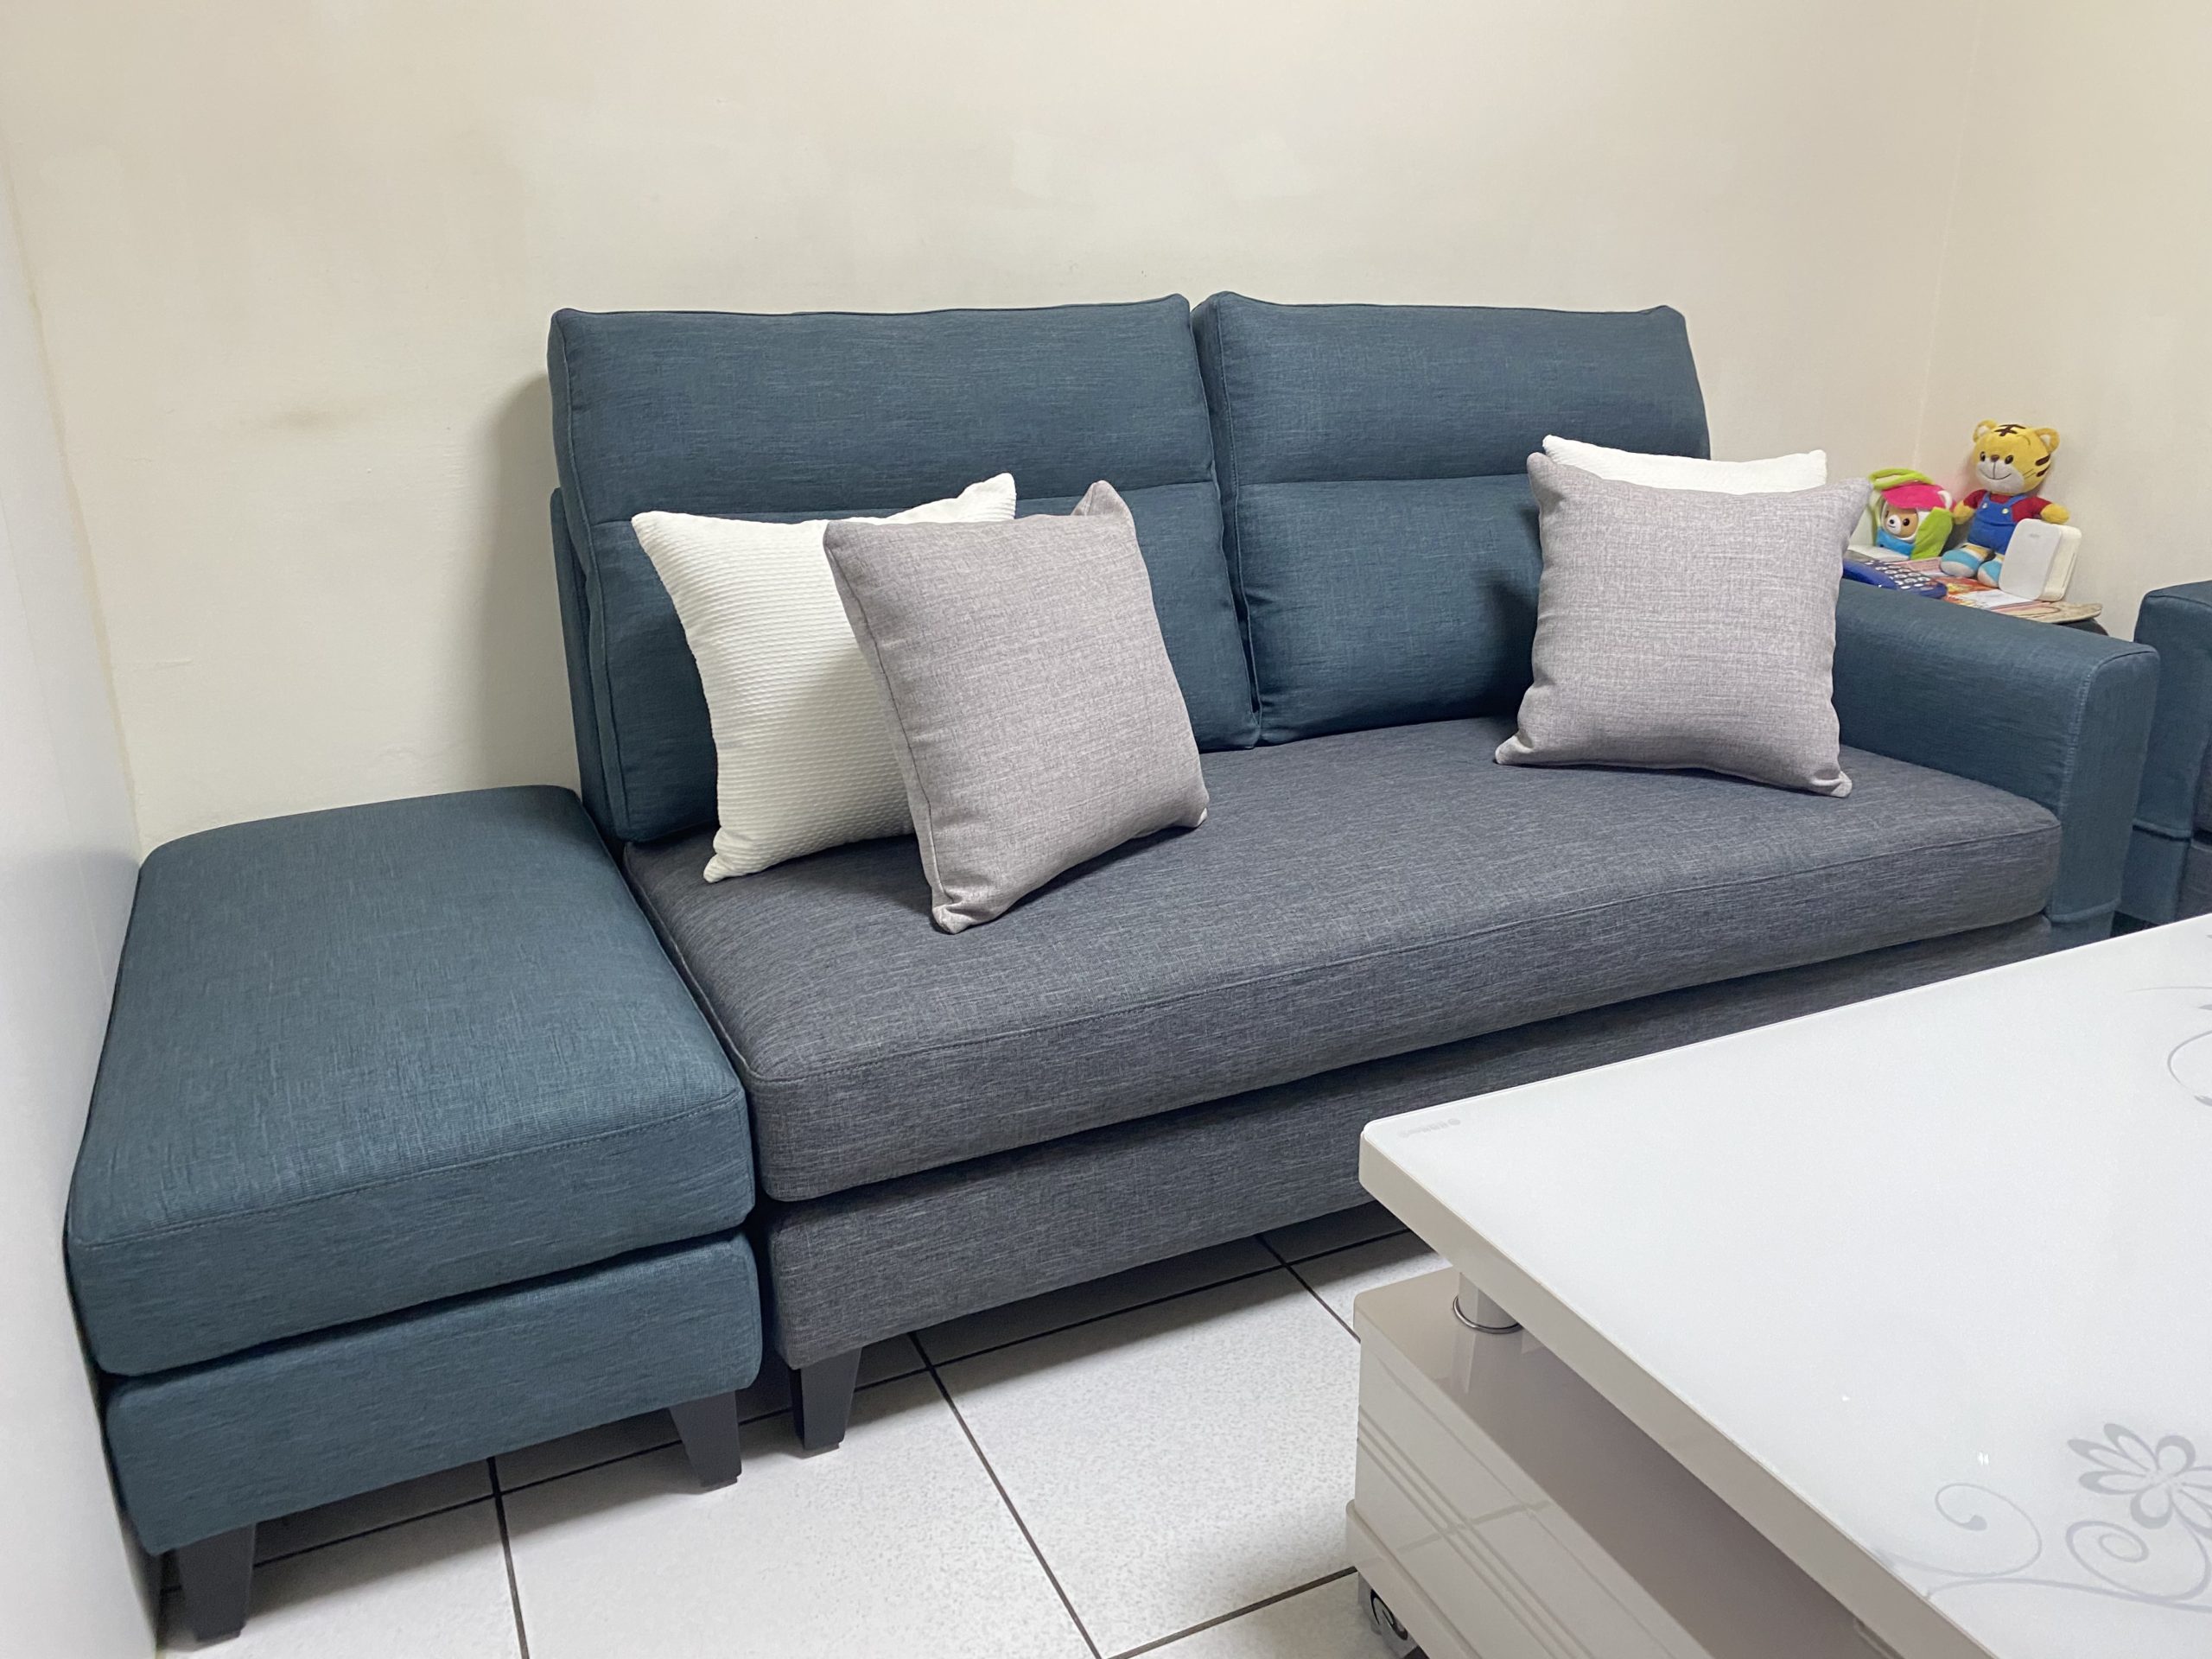 【客戶案例分享】太平客人雙色沙發訂製